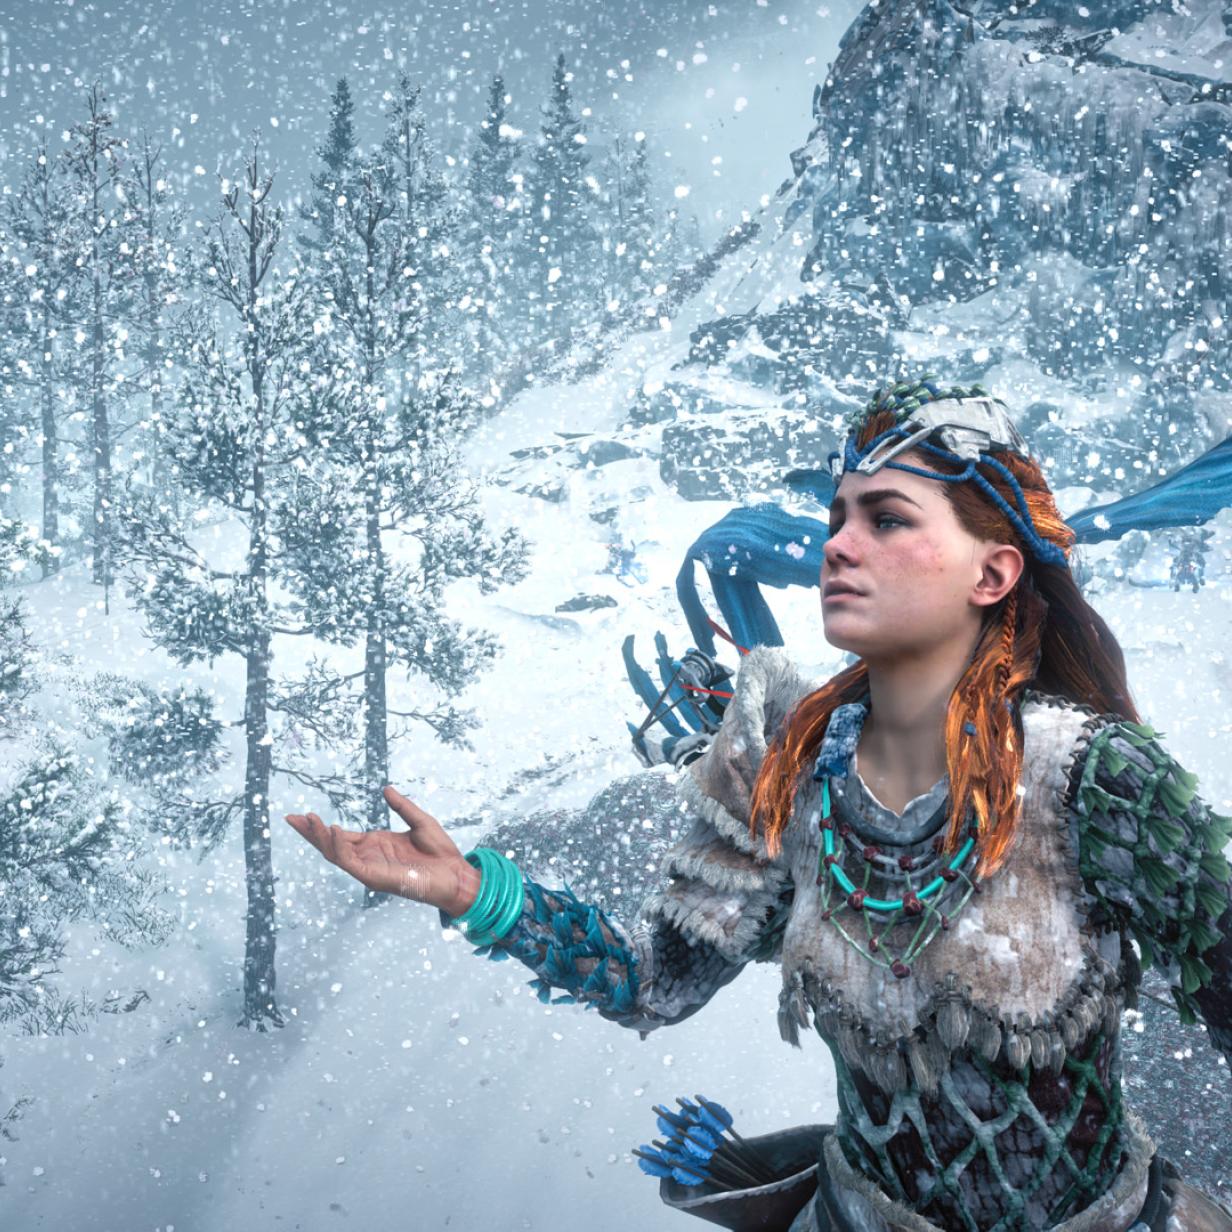 Horizon Zero Dawn: The Frozen Wilds im Test - Schönes Schnellgestöber